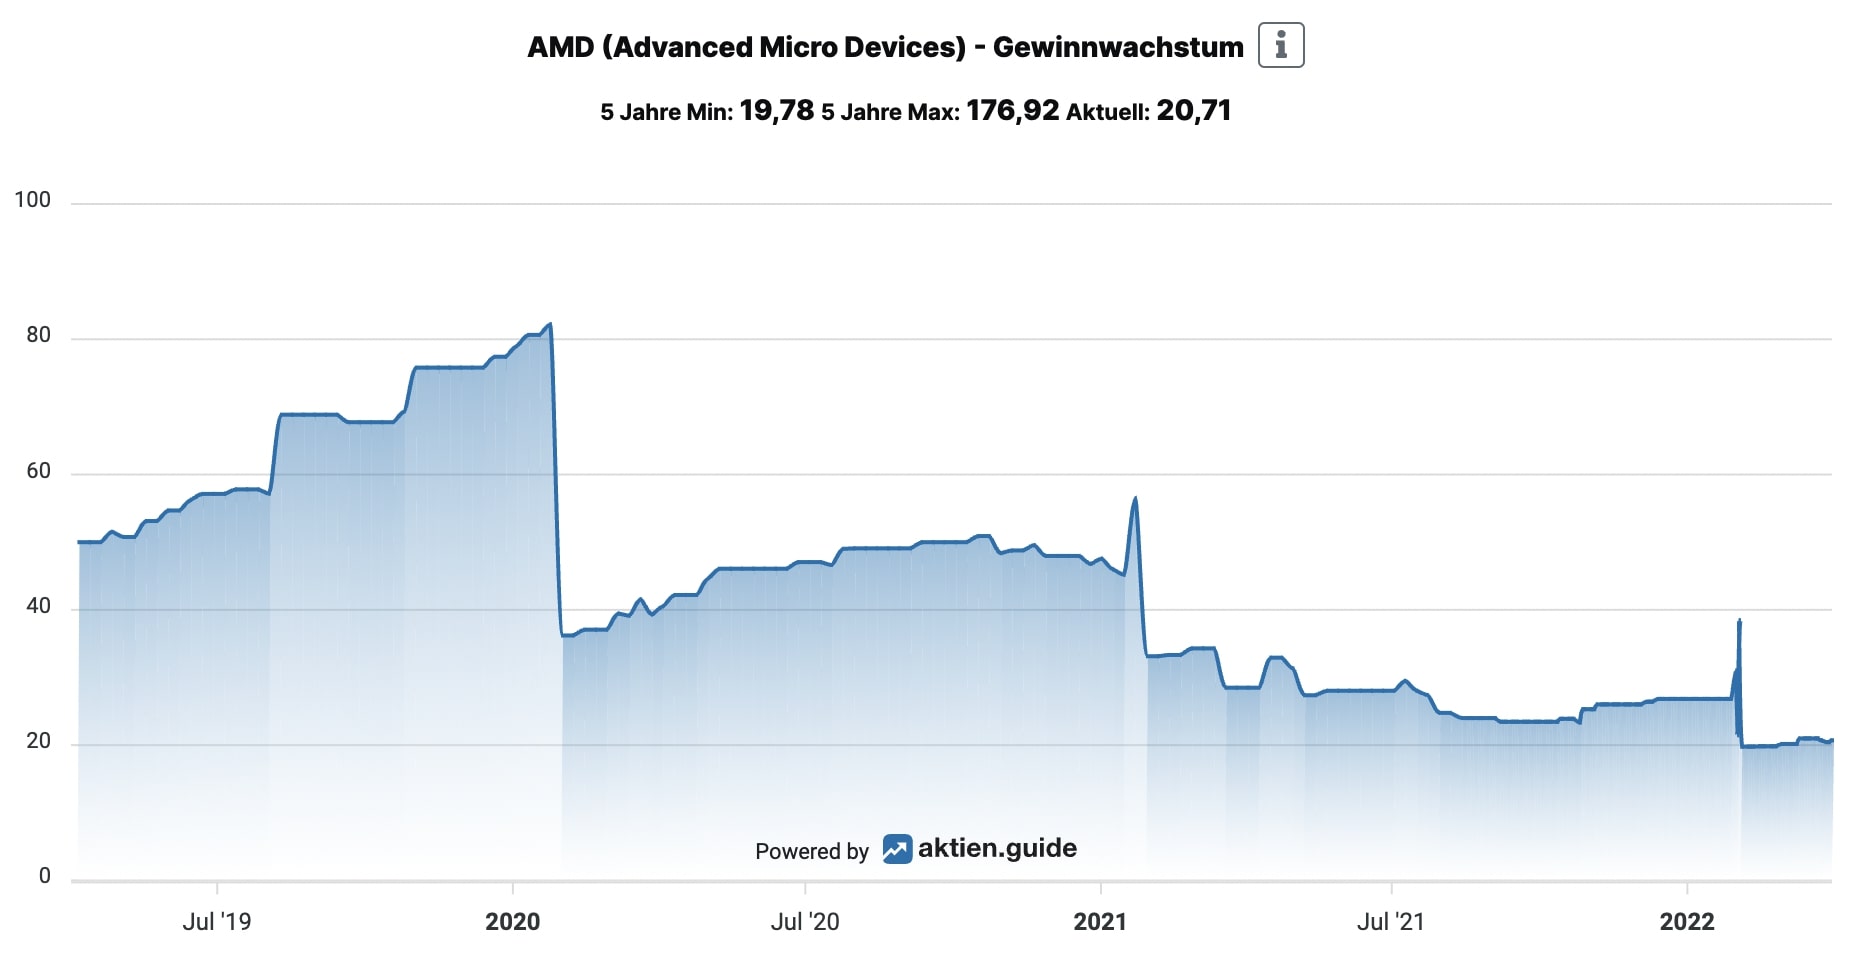 Erwartetes Gewinnwachstum der AMD Aktie aktien.guide